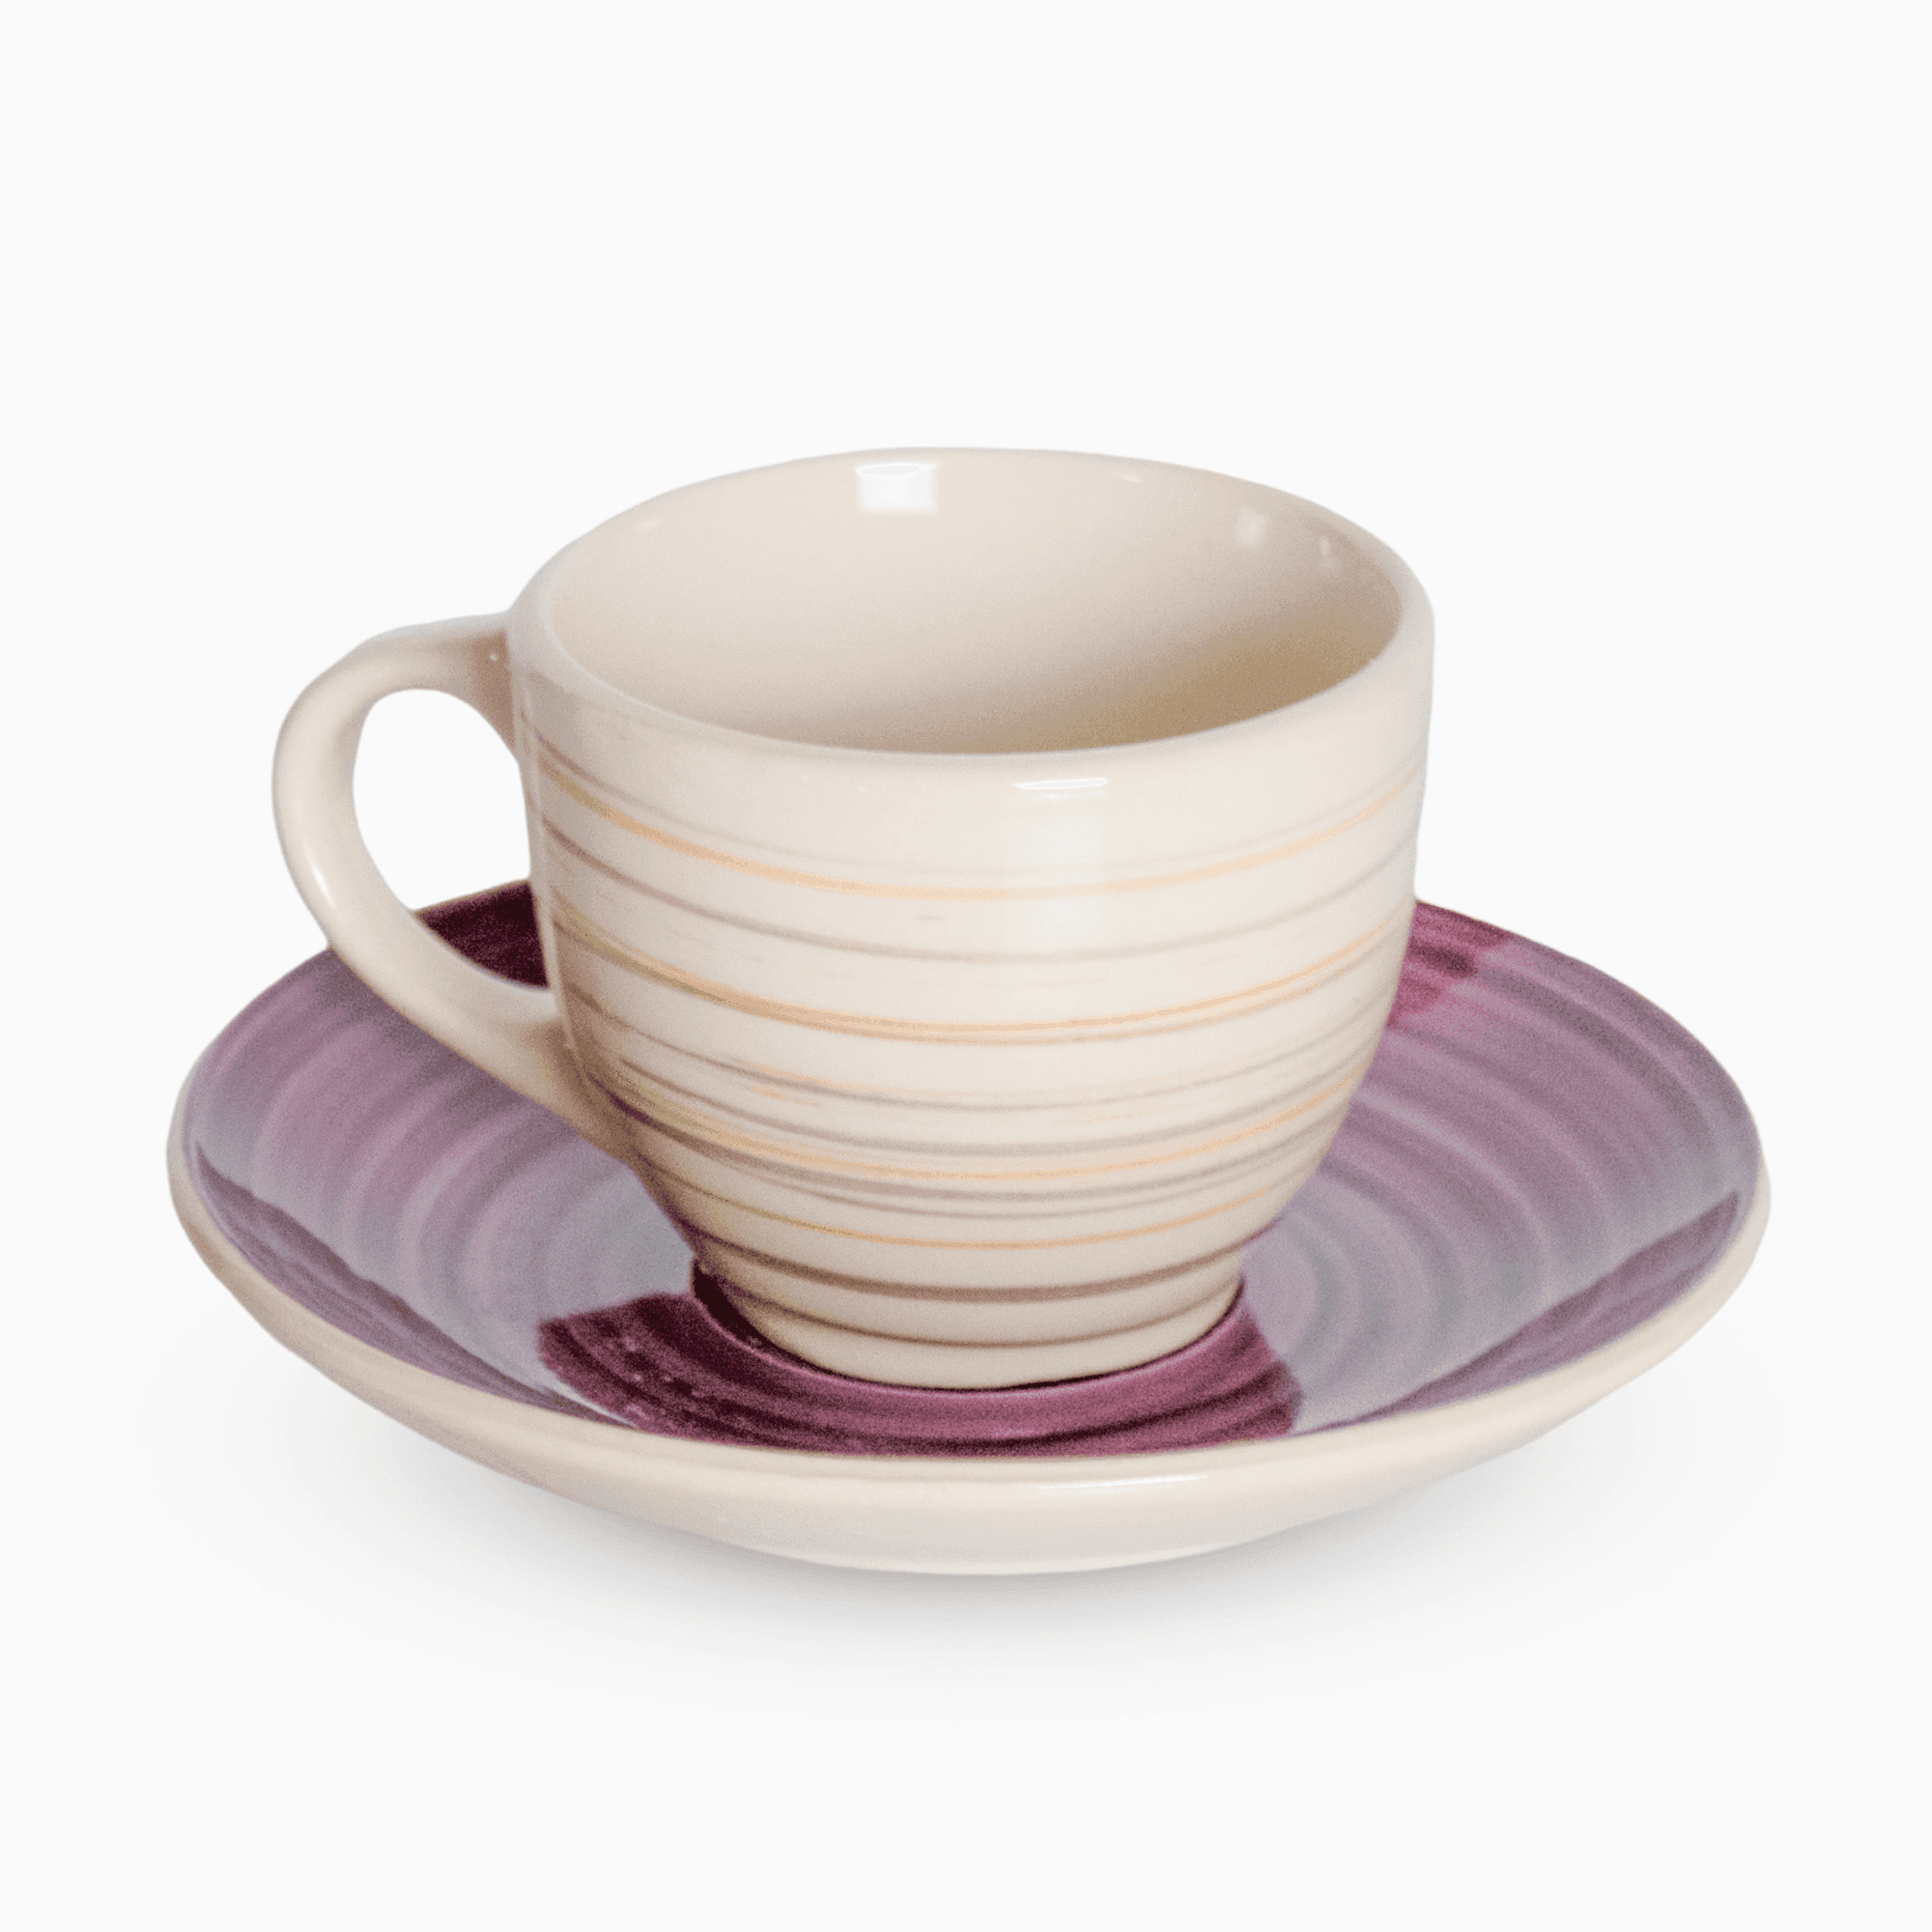 Servizio 6 Tazzine Caffe' In Porcellana E piattino Linea Sand Purple Piatti e Tazzine Albalu Bomboniere   